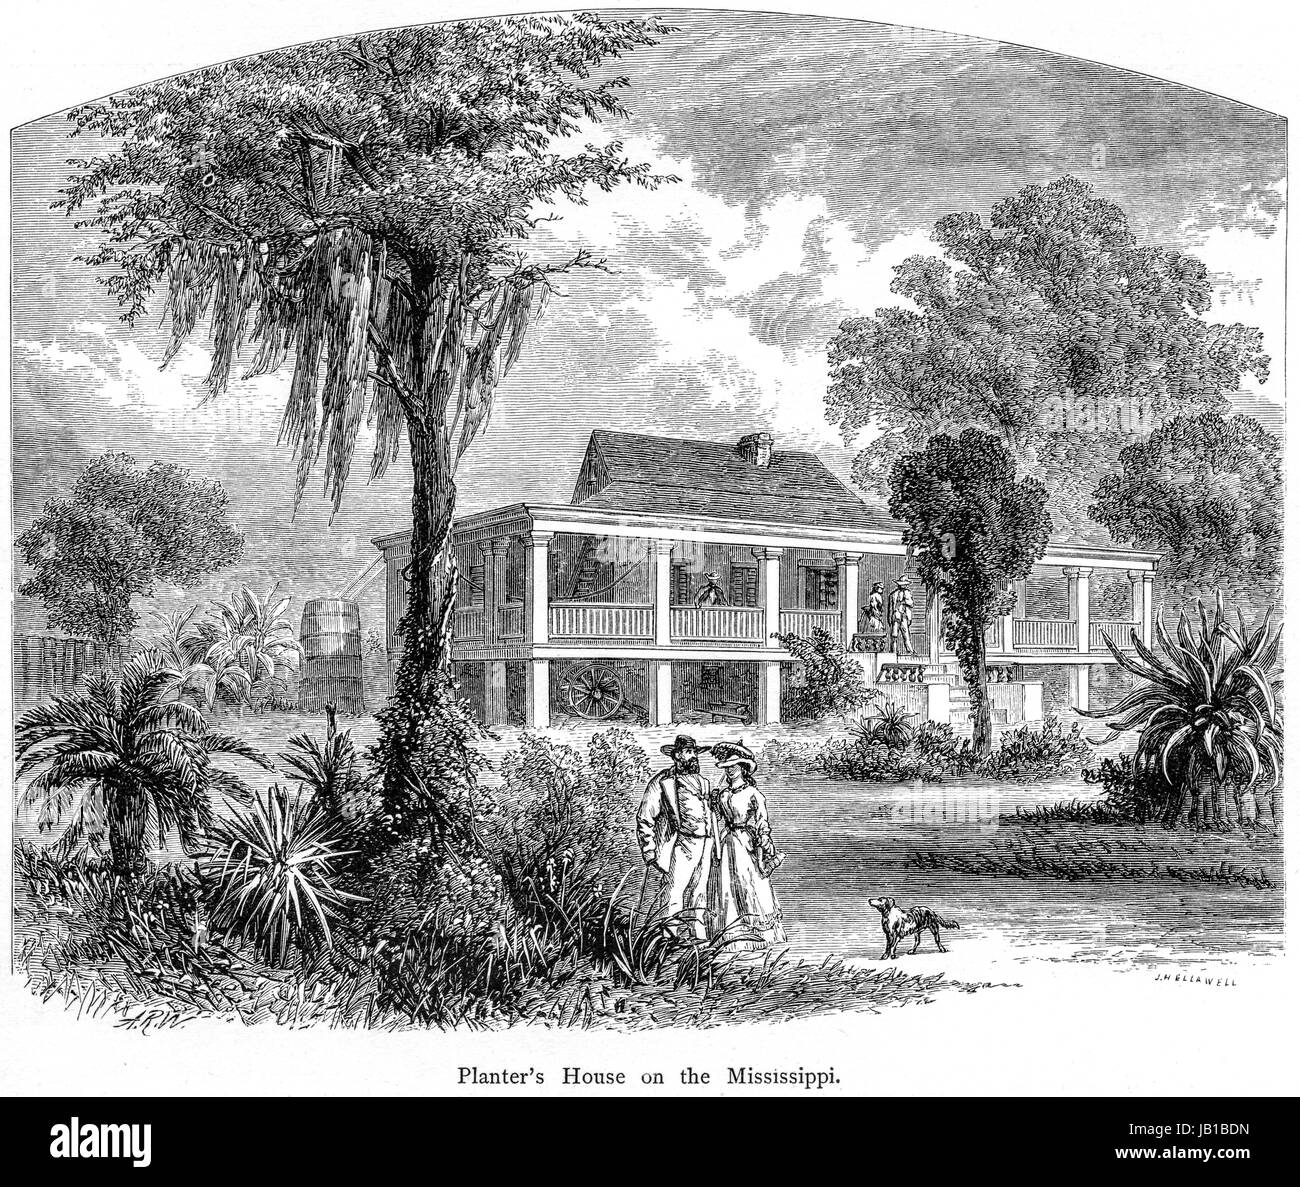 Une gravure d'une maison de planteurs sur le Mississippi numérisées à haute résolution à partir d'un livre imprimé en 1872. Croyait libres de droit. Banque D'Images